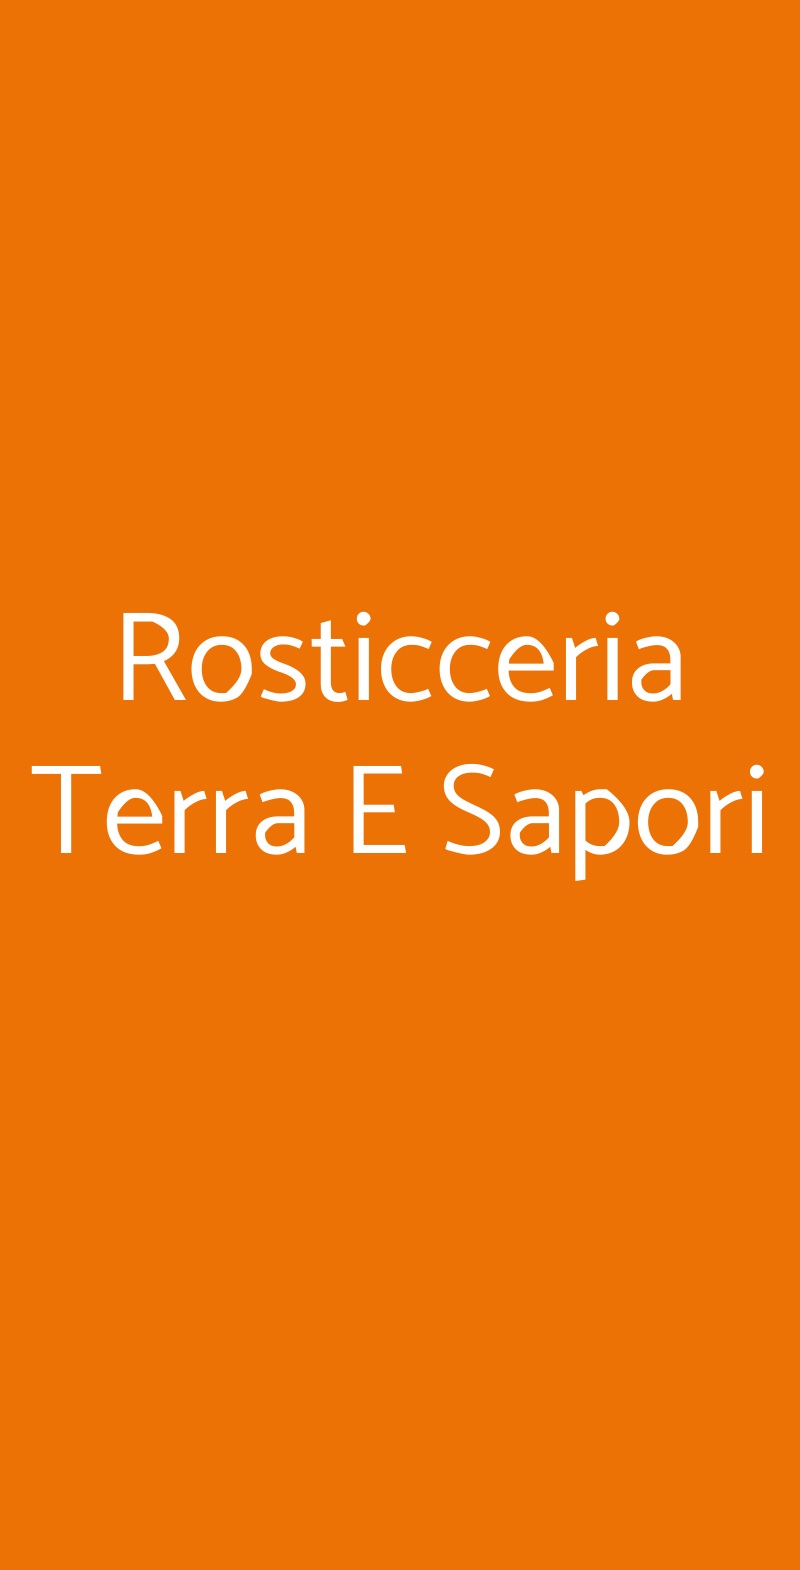 Rosticceria Terra E Sapori Bologna menù 1 pagina